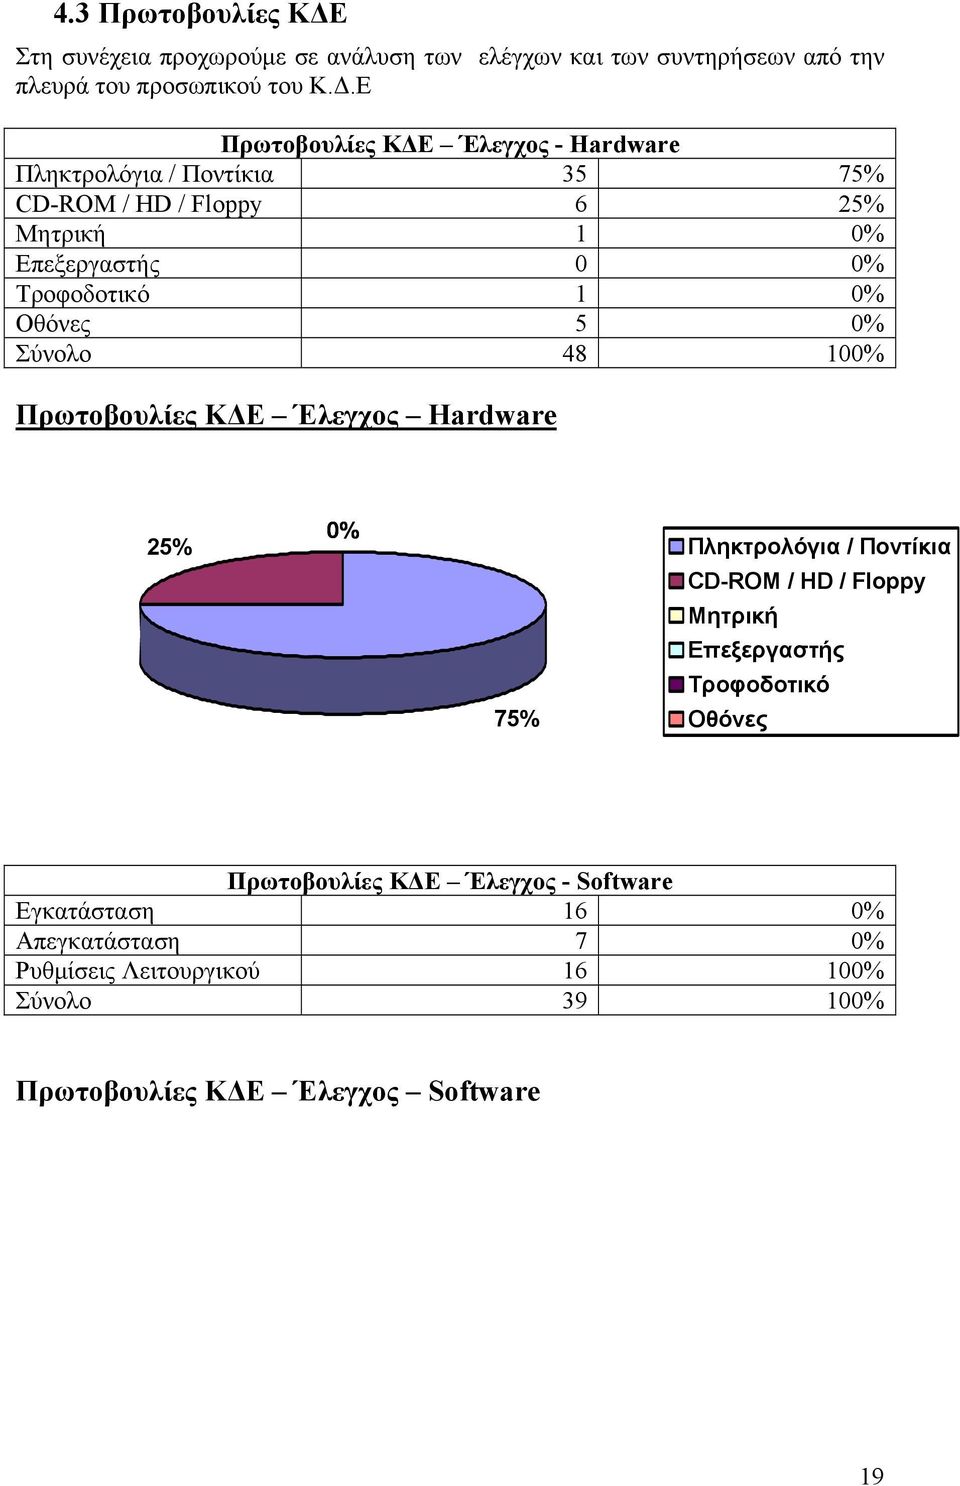 Ε Πρωτοβουλίες ΚΔΕ Έλεγχος - Πληκτρολόγια / Ποντίκια 35 75% CD-ROM / HD / Floppy 6 25% Μητρική 1 0% Επεξεργαστής 0 0% Τροφοδοτικό 1